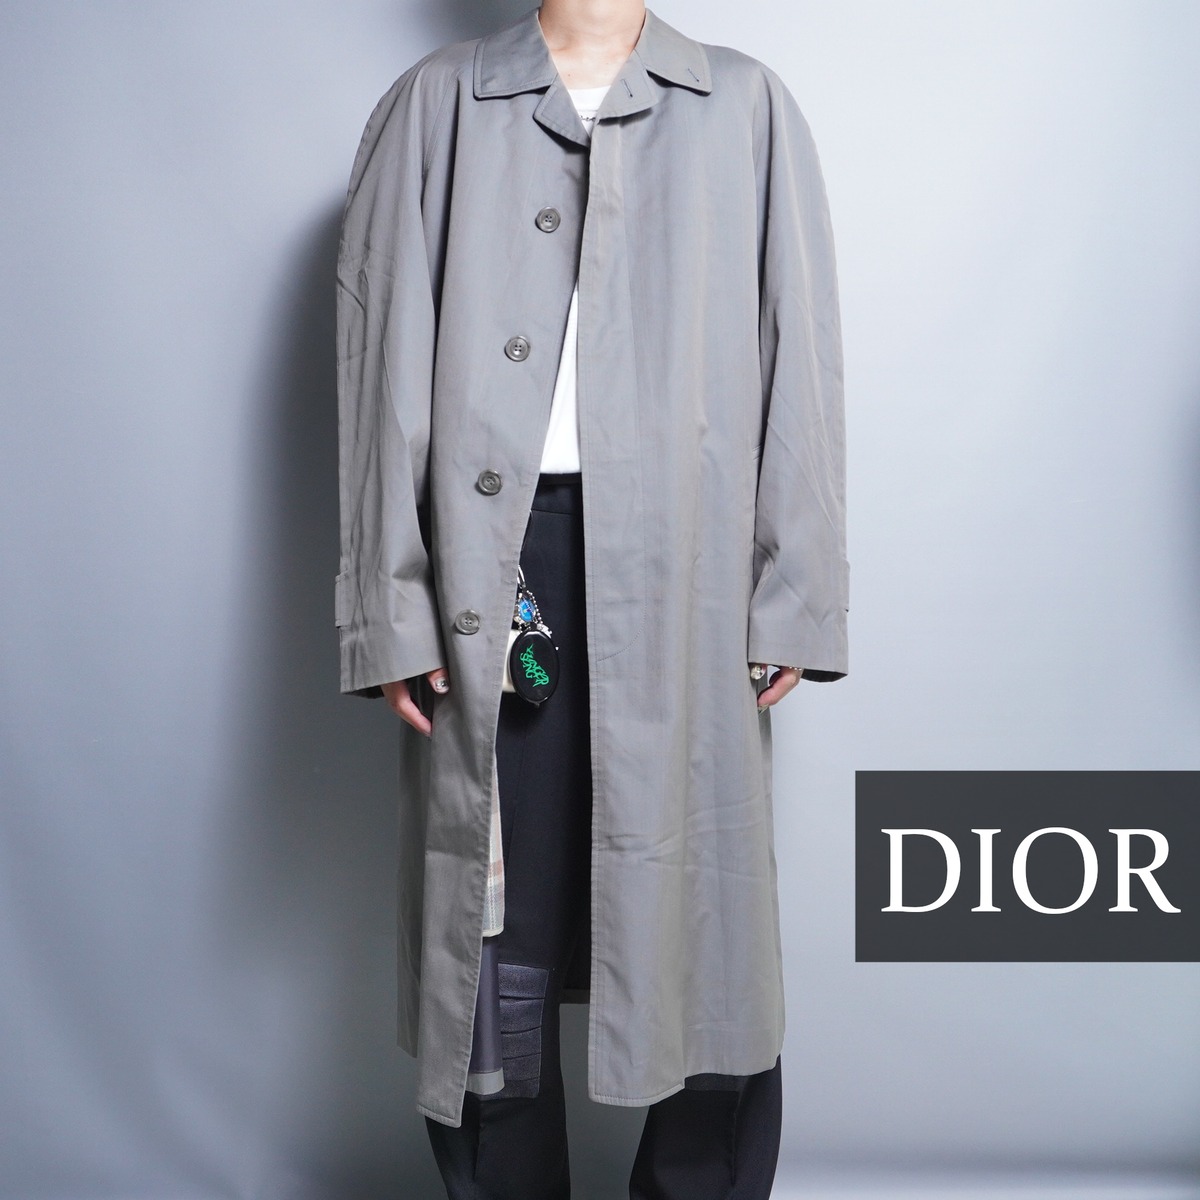 古着屋デテルミナシオン【美品】Christian Dior 光沢感 ライナー付き ステンカラーコート